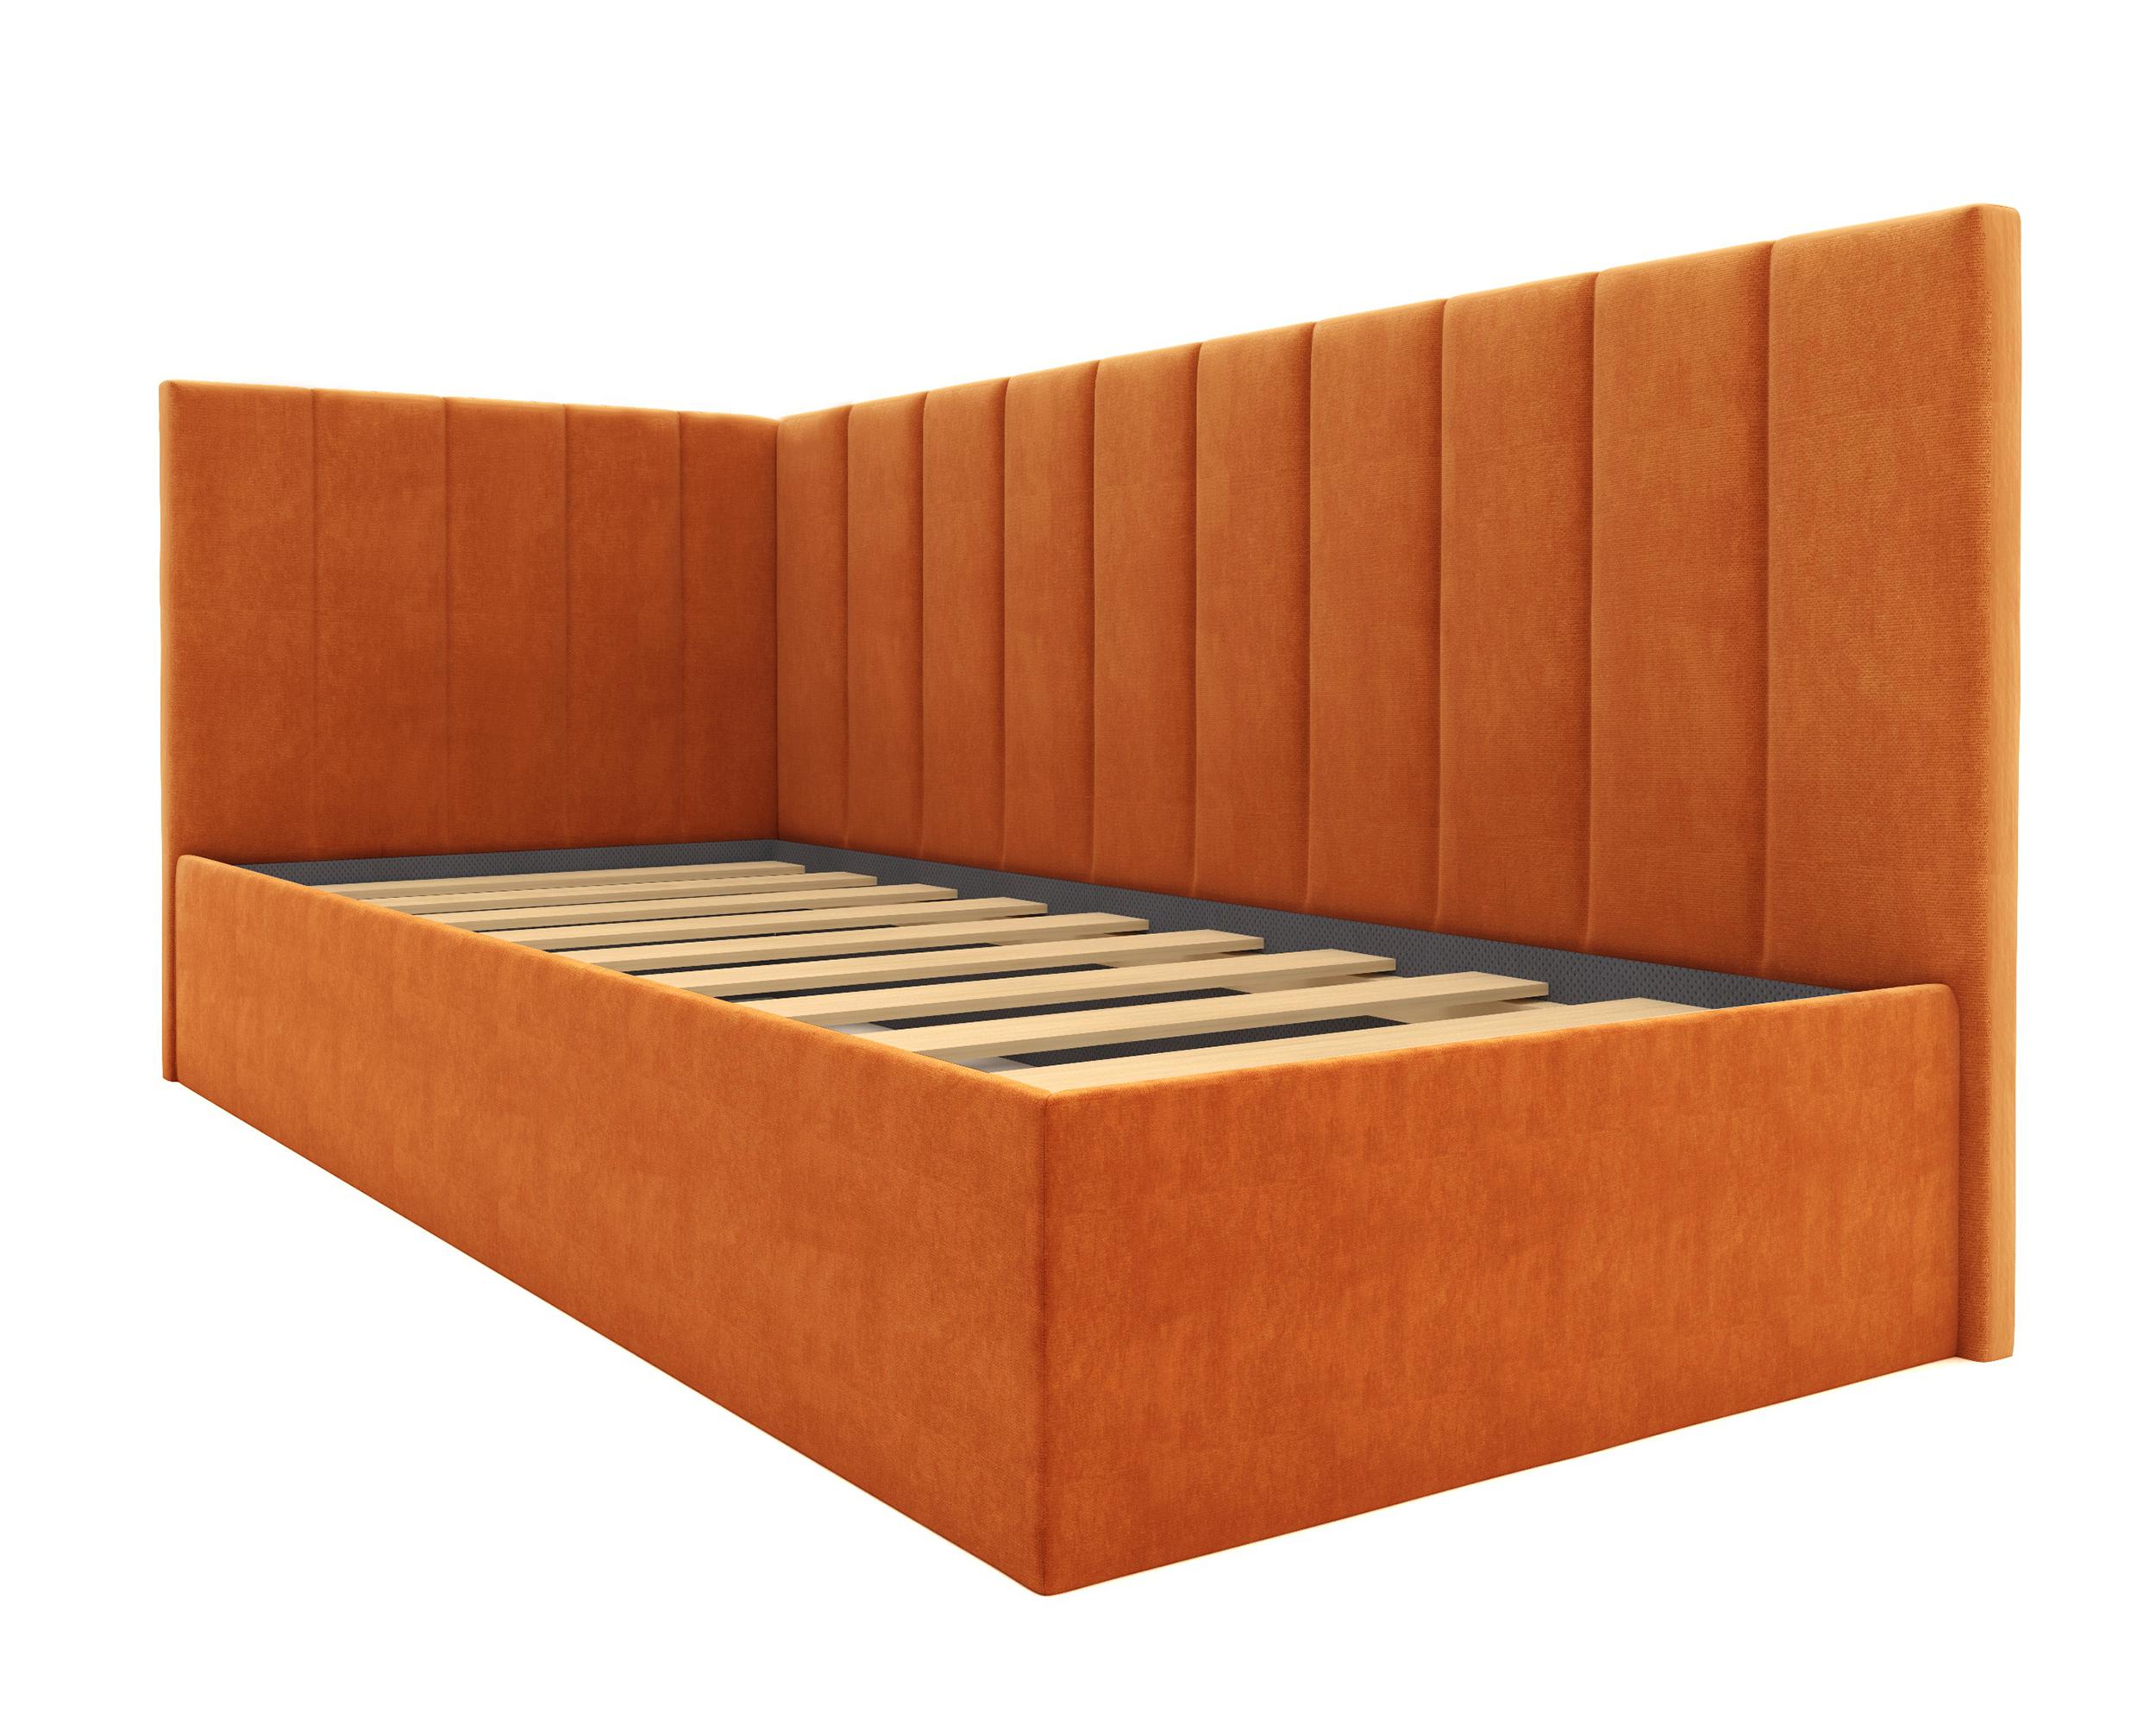 Изображение товара Детская кровать Равенна Угол А оранжевая, 80x190x100 см на сайте adeta.ru